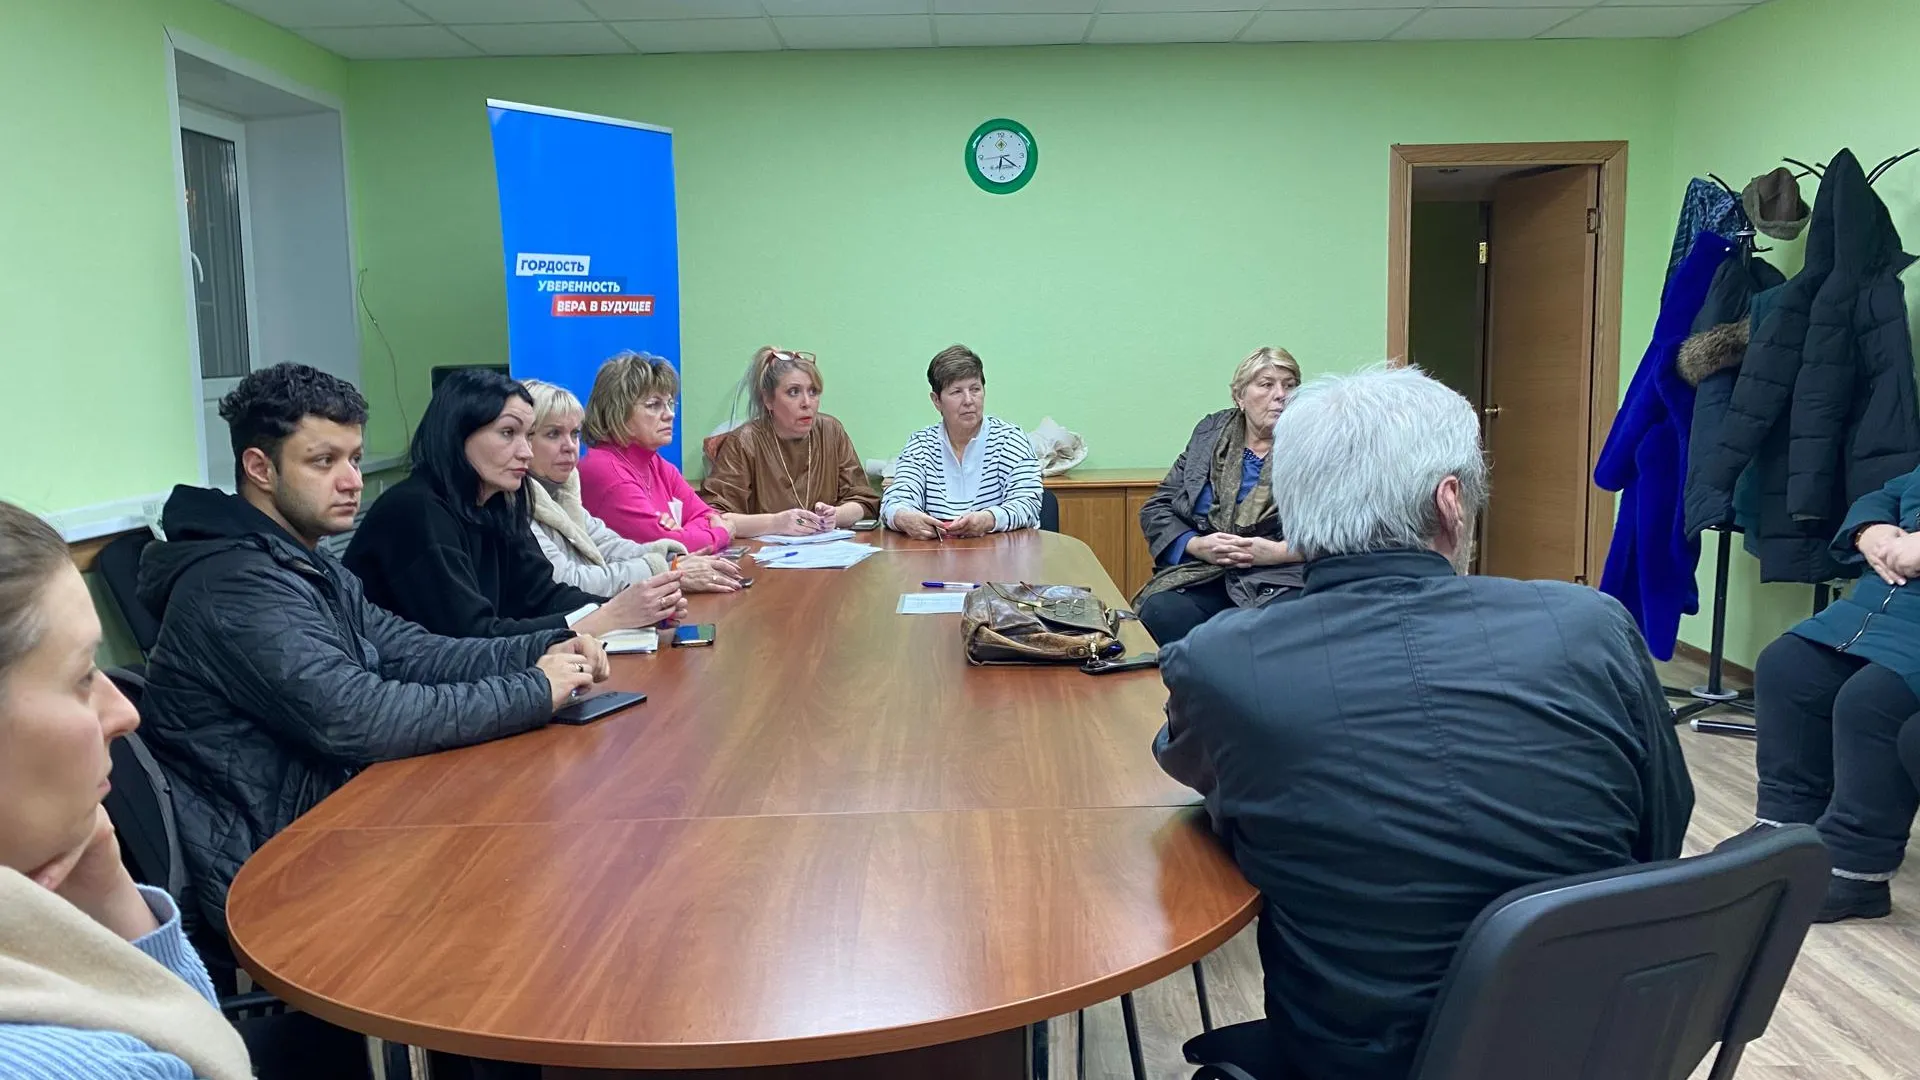 Координатор проекта «Жители МКД» в Котельниках провела встречу с жителями микрорайона Белая Дача